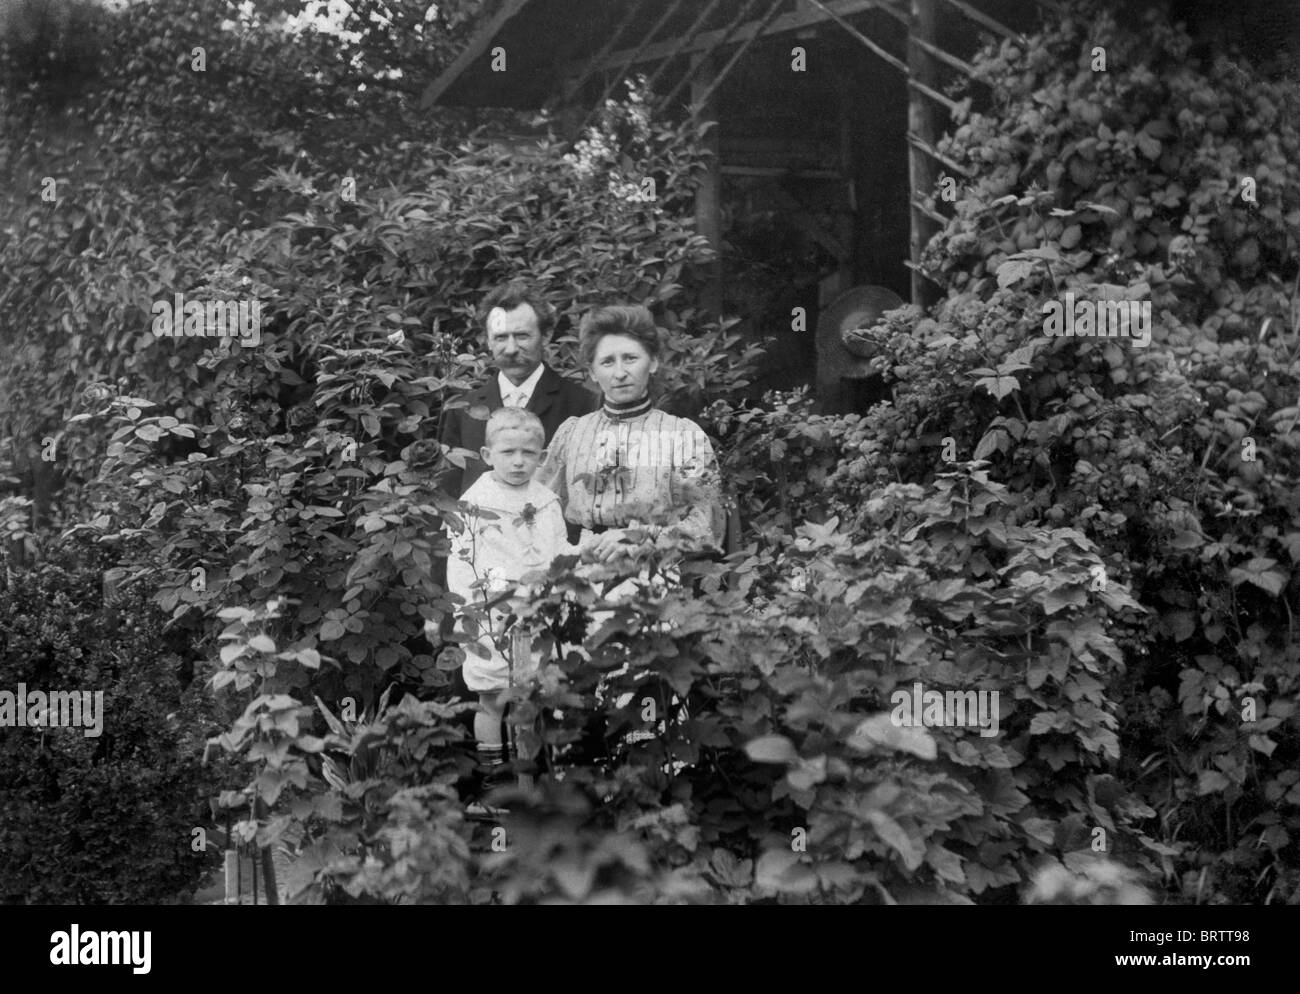 Famiglia in un giardino, immagine storica, ca. 1930 Foto Stock